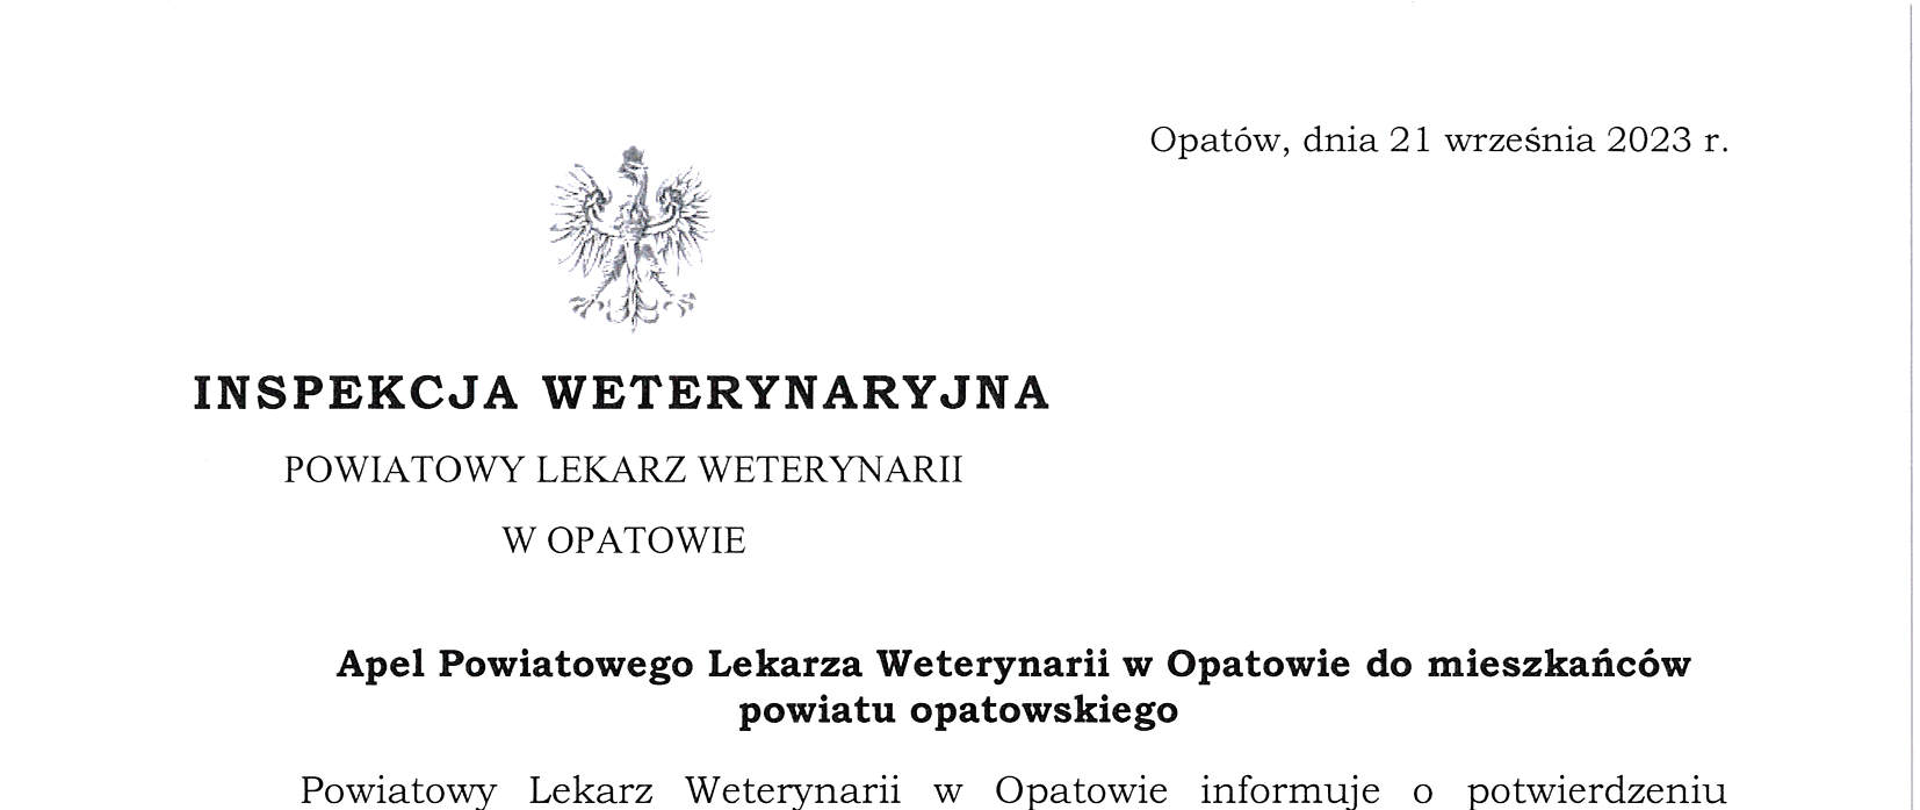 Apel Powiatowego Lekarza Weterynarii w Opatowie do mieszkańców powiatu opatowskiego